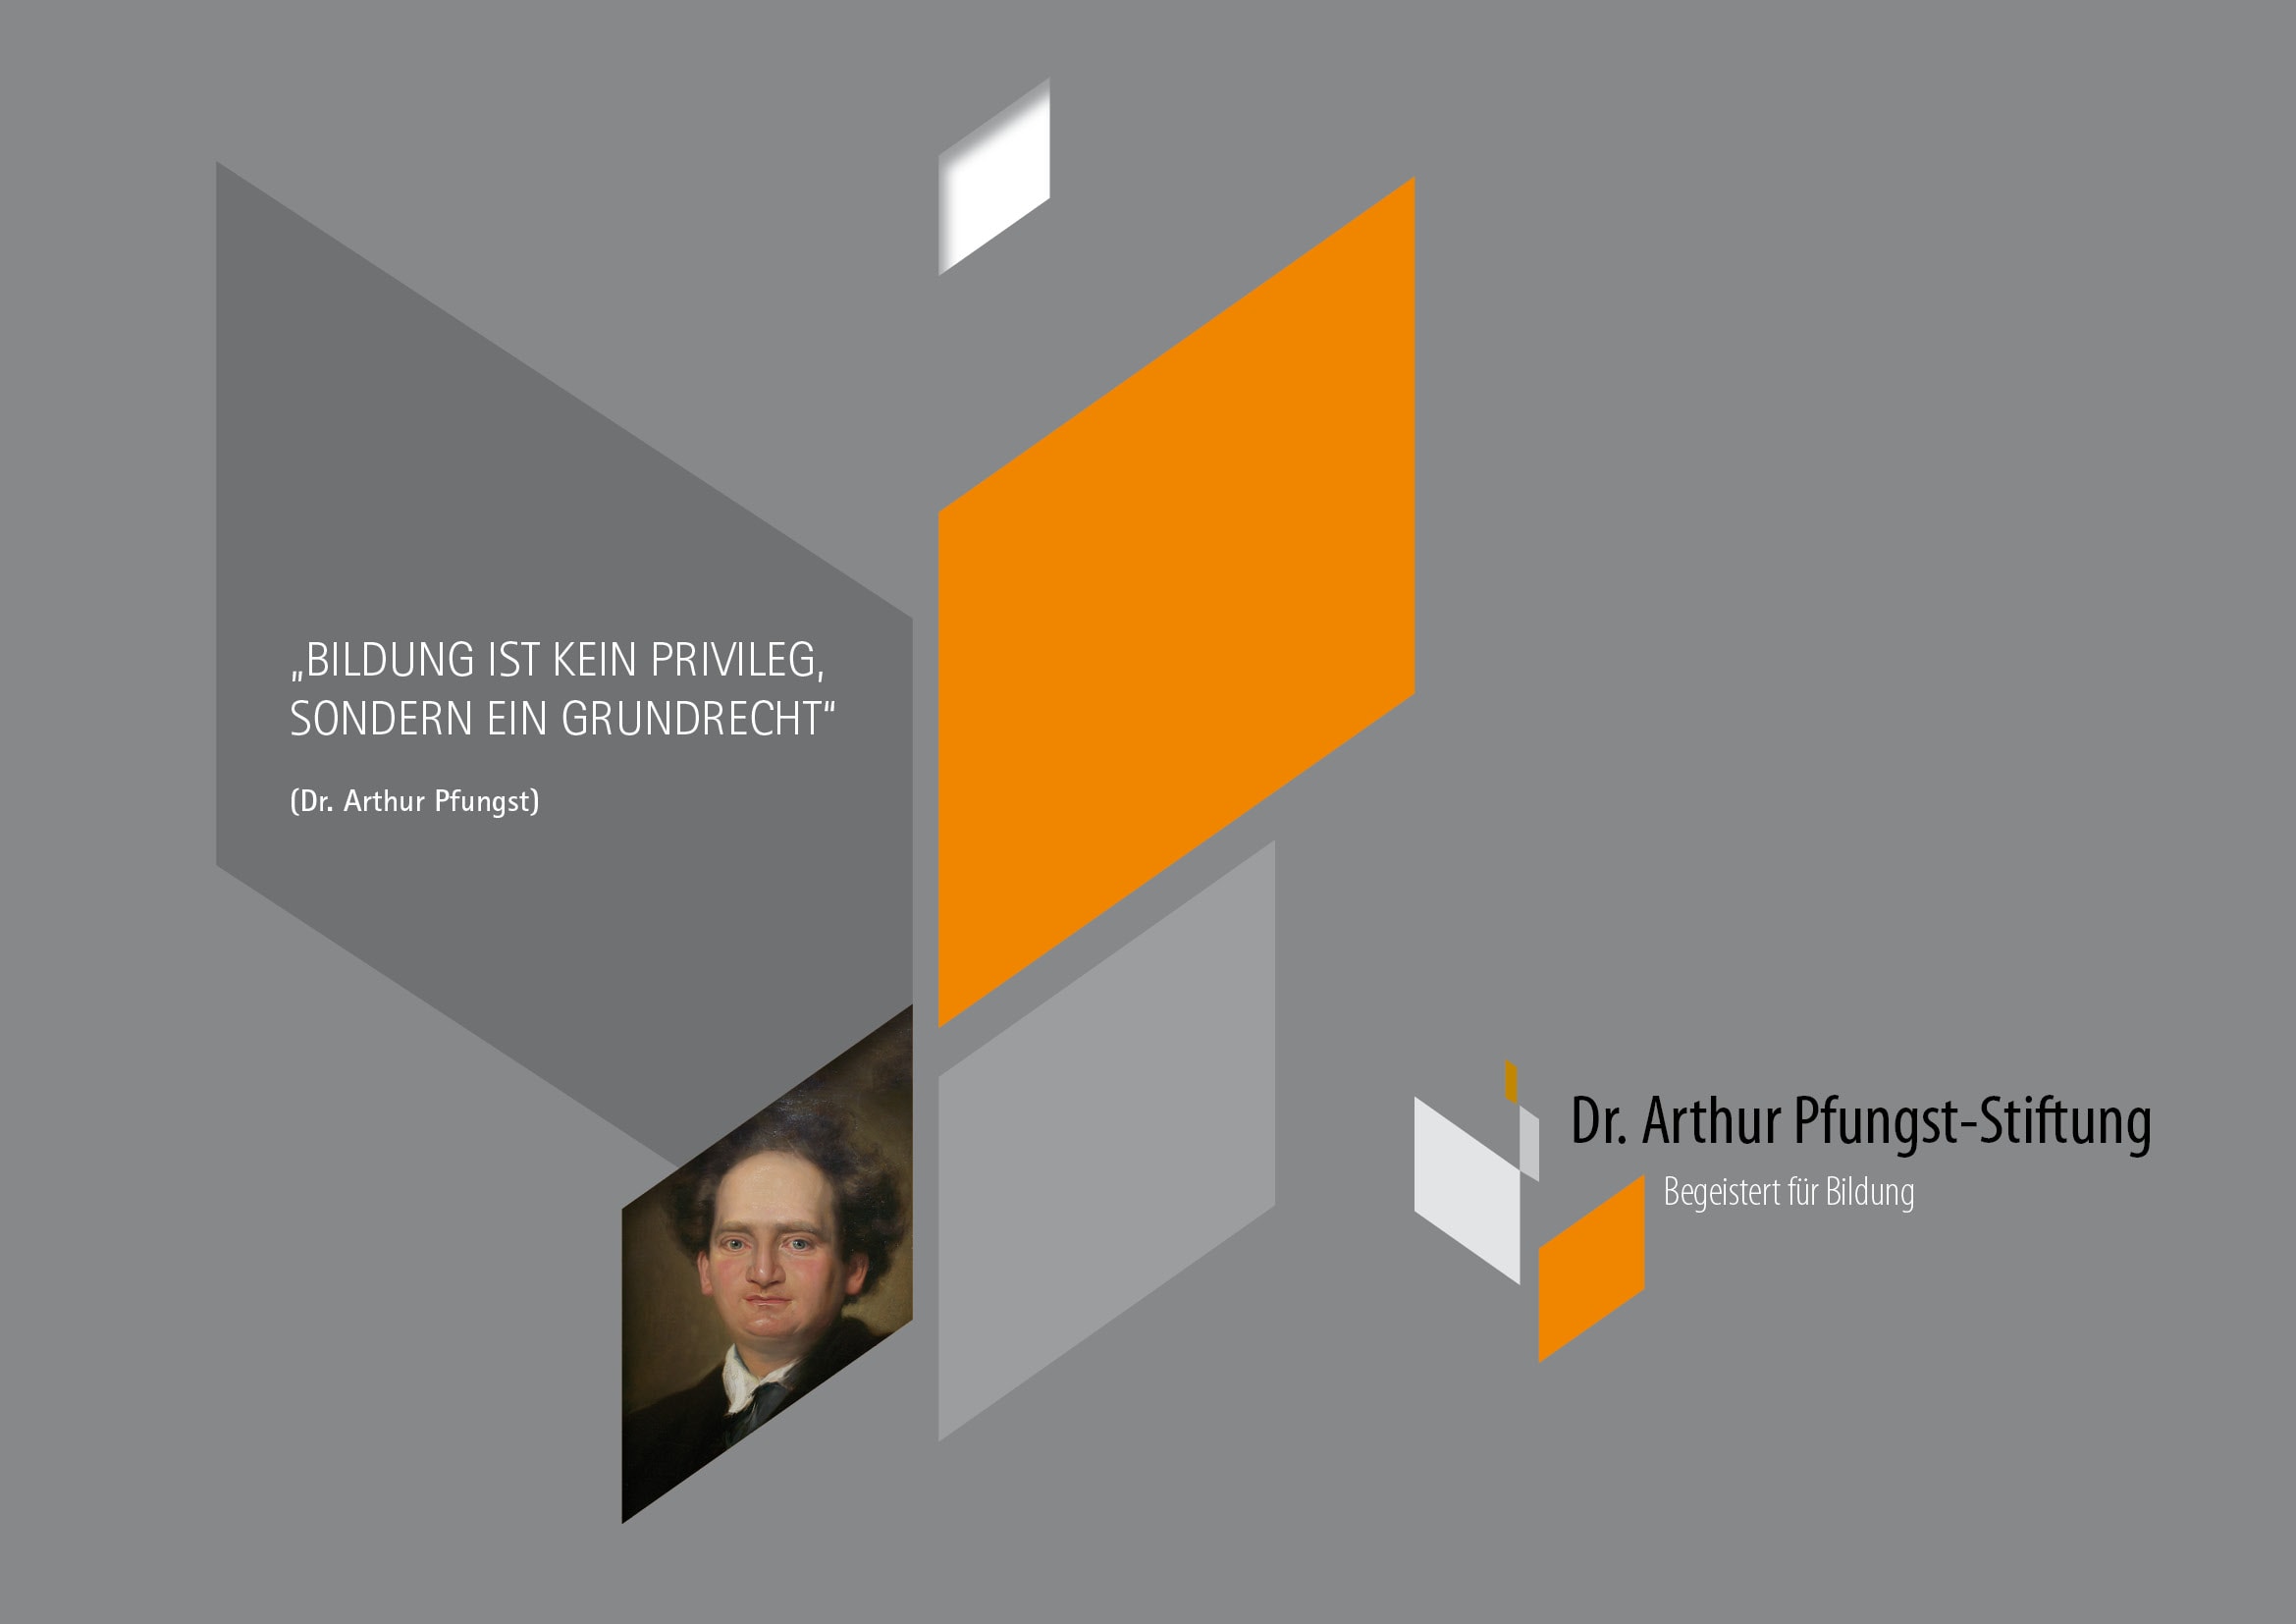 Corporate Design und Homepage Entwicklung für Dr. Arthur Pfungst-Stiftung durch Grafik-Designer Ronald Wissler